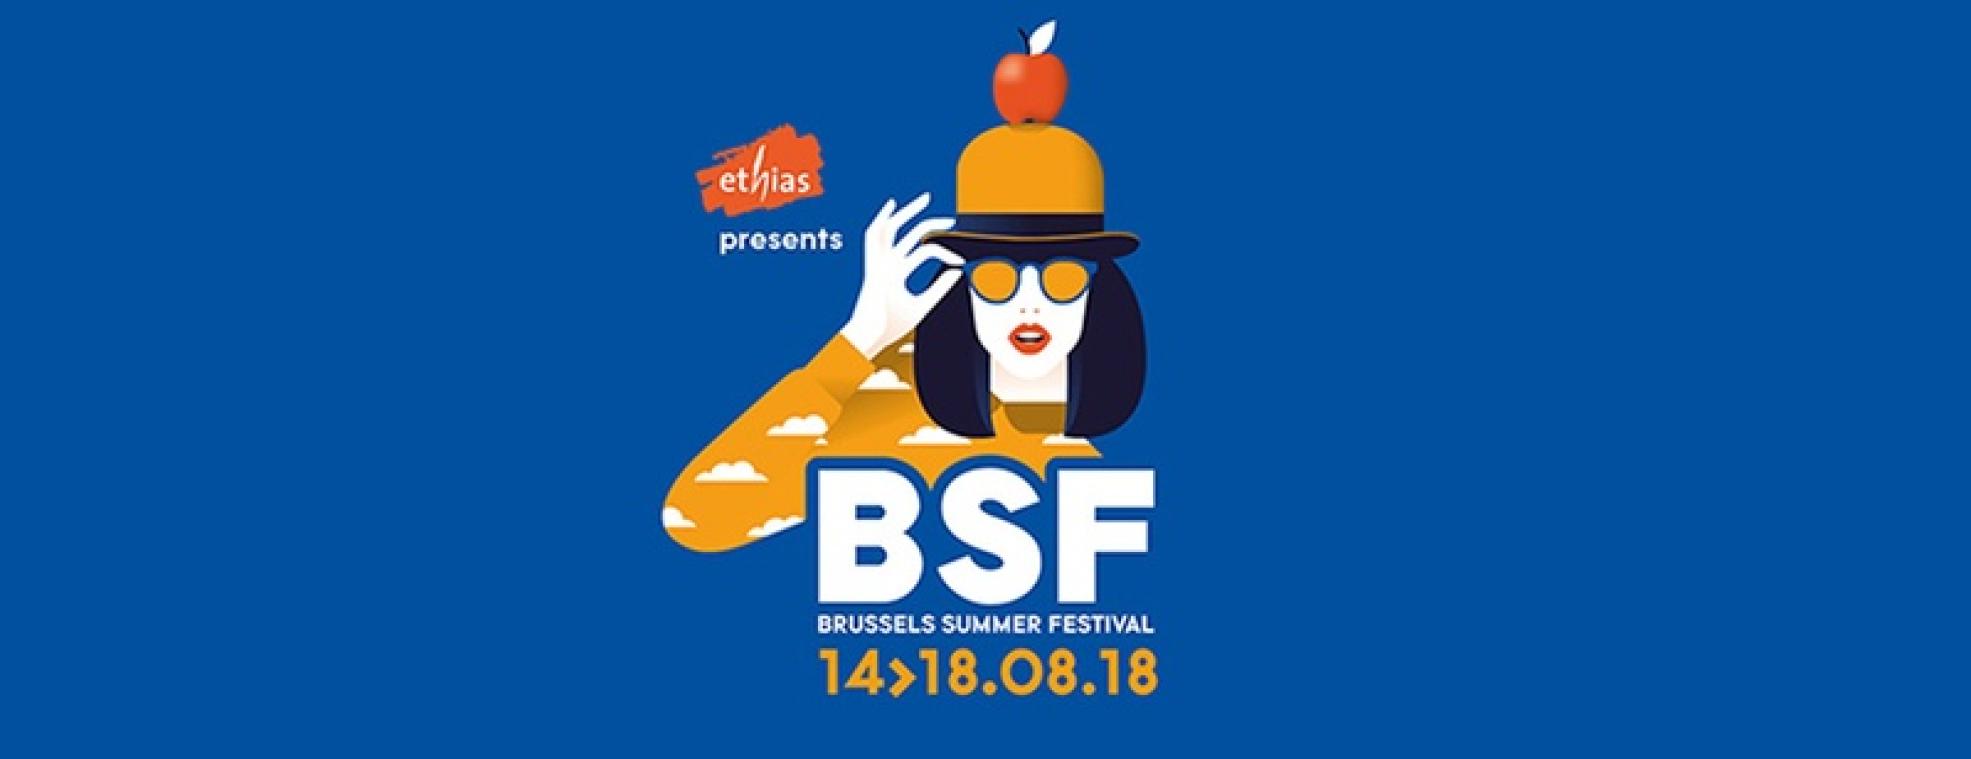 Gagnez vos tickets pour le BSF 2018 !